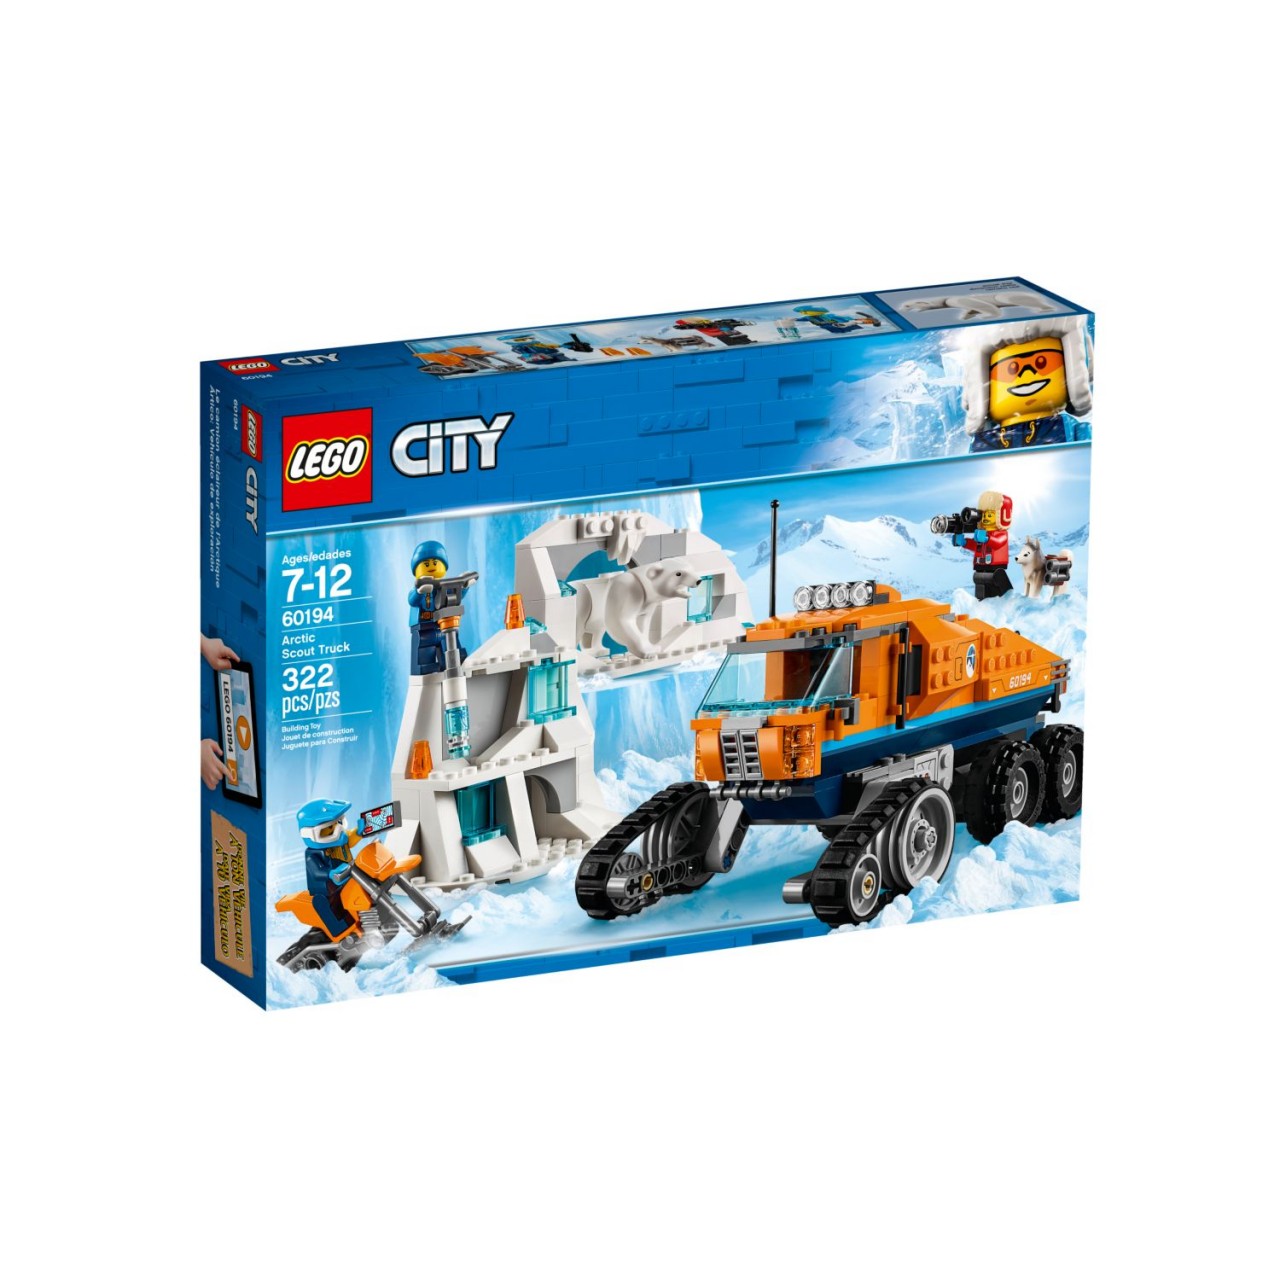 LEGO CITY 60194 Arktis-Erkundungstruck